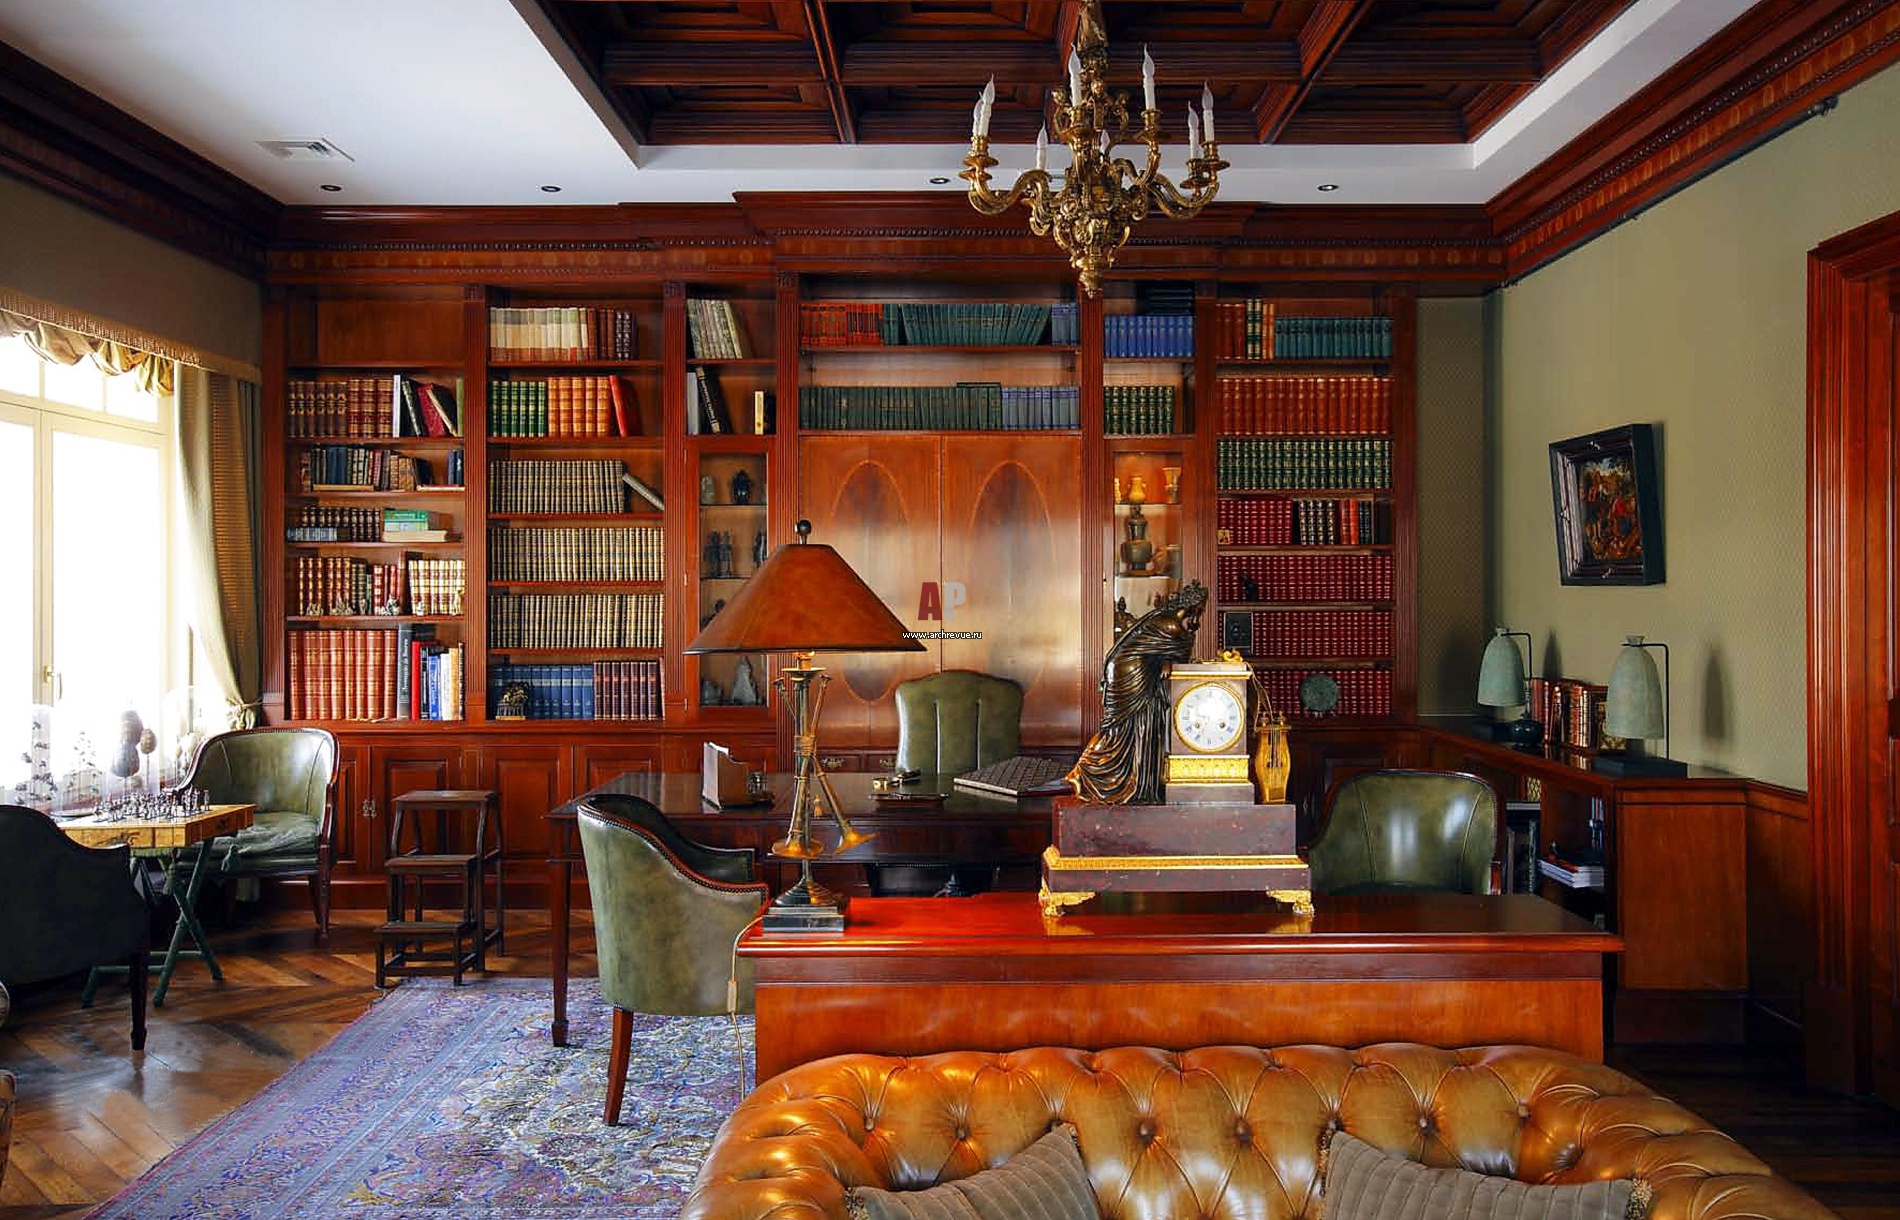 Кабинет 18 века. Библиотека дворянской усадьбы 19 века. Английский стиль в интерьере. Кабинет в старинном стиле. Интерьер старинного кабинета.